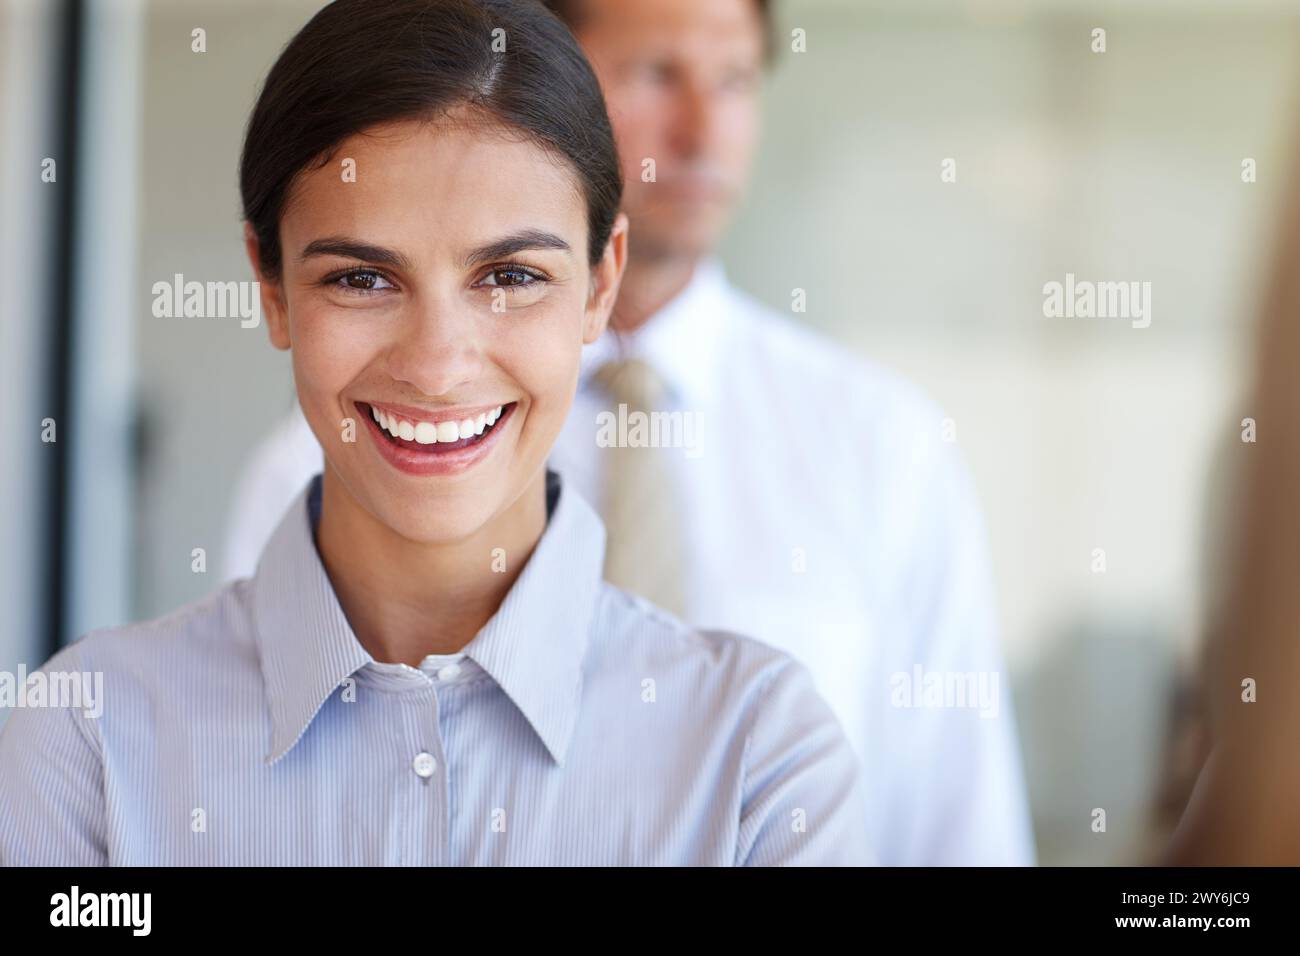 Frau, lächelnd und professionell im Porträt für eine geschäftliche Beschäftigung, einen Bürojob oder eine Karrieremöglichkeit. Mädchen, glücklich oder fröhlich für die Assistentenarbeit Stockfoto